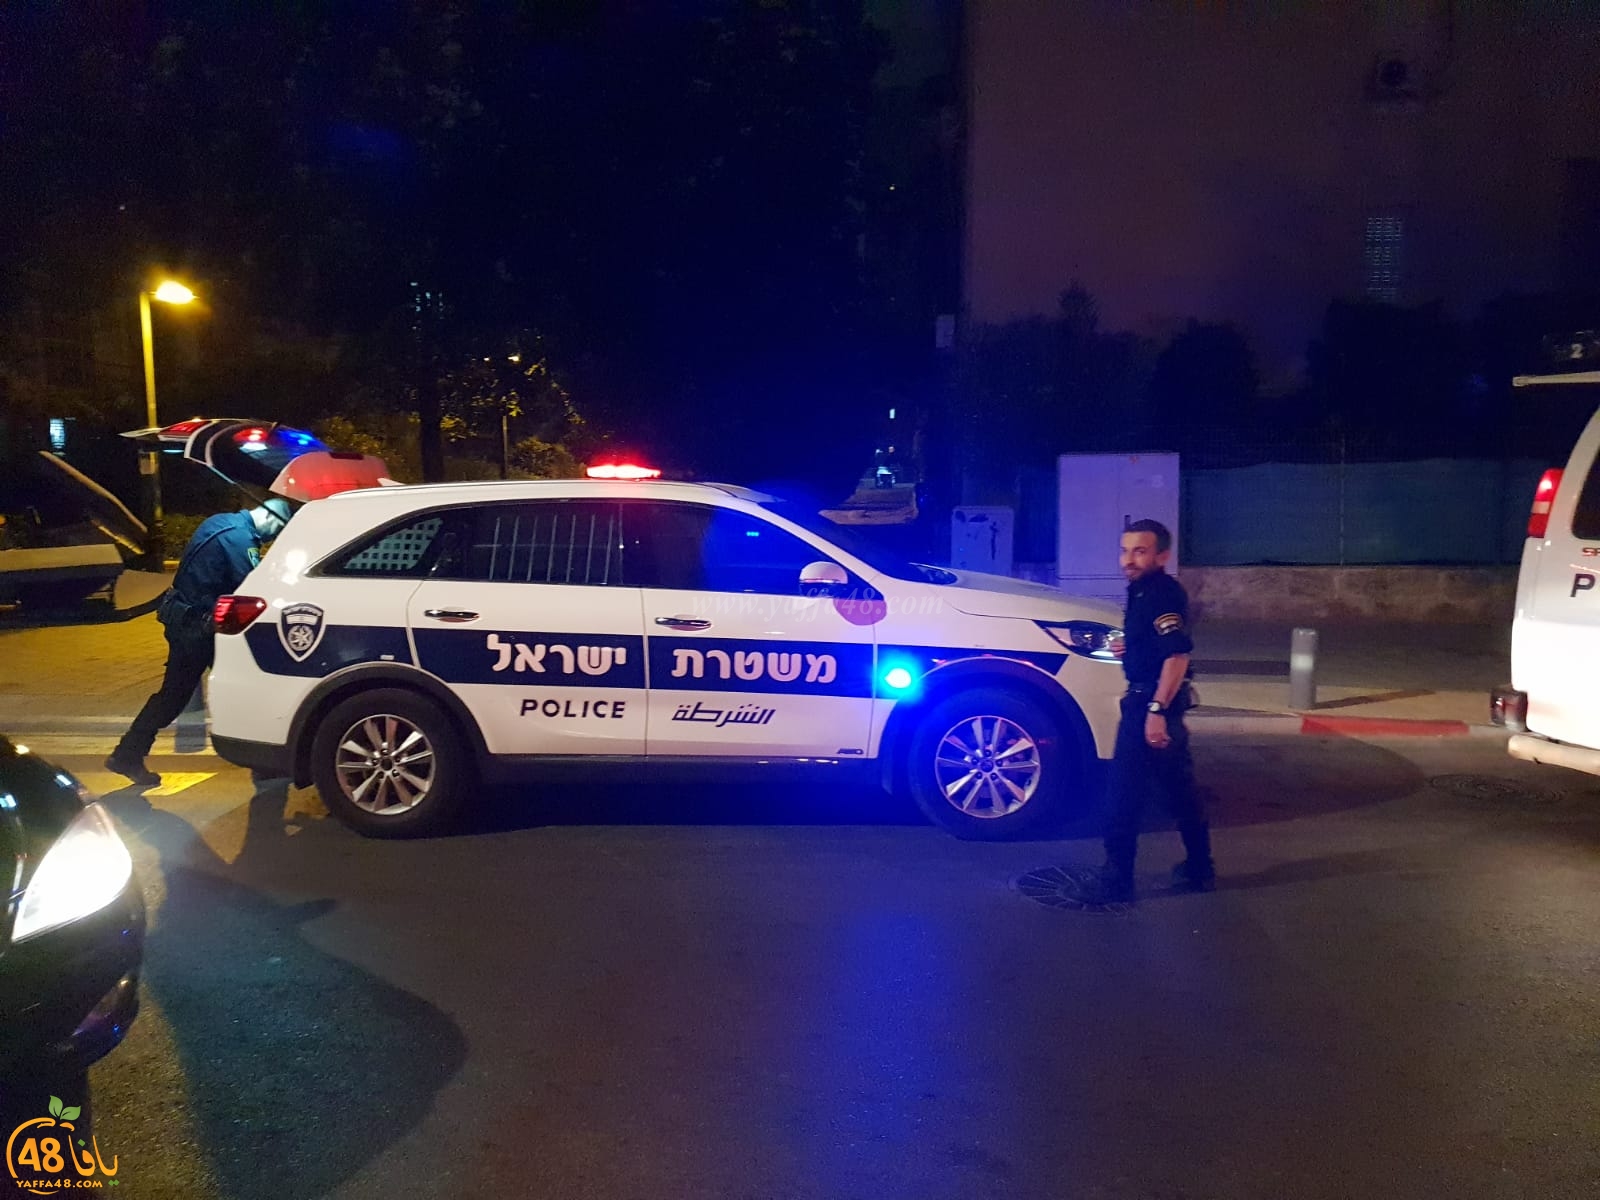  يافا: الشرطة تُغلق شارعي تسيهتلي ونخمان مبرسلف بعد اطلاق نار